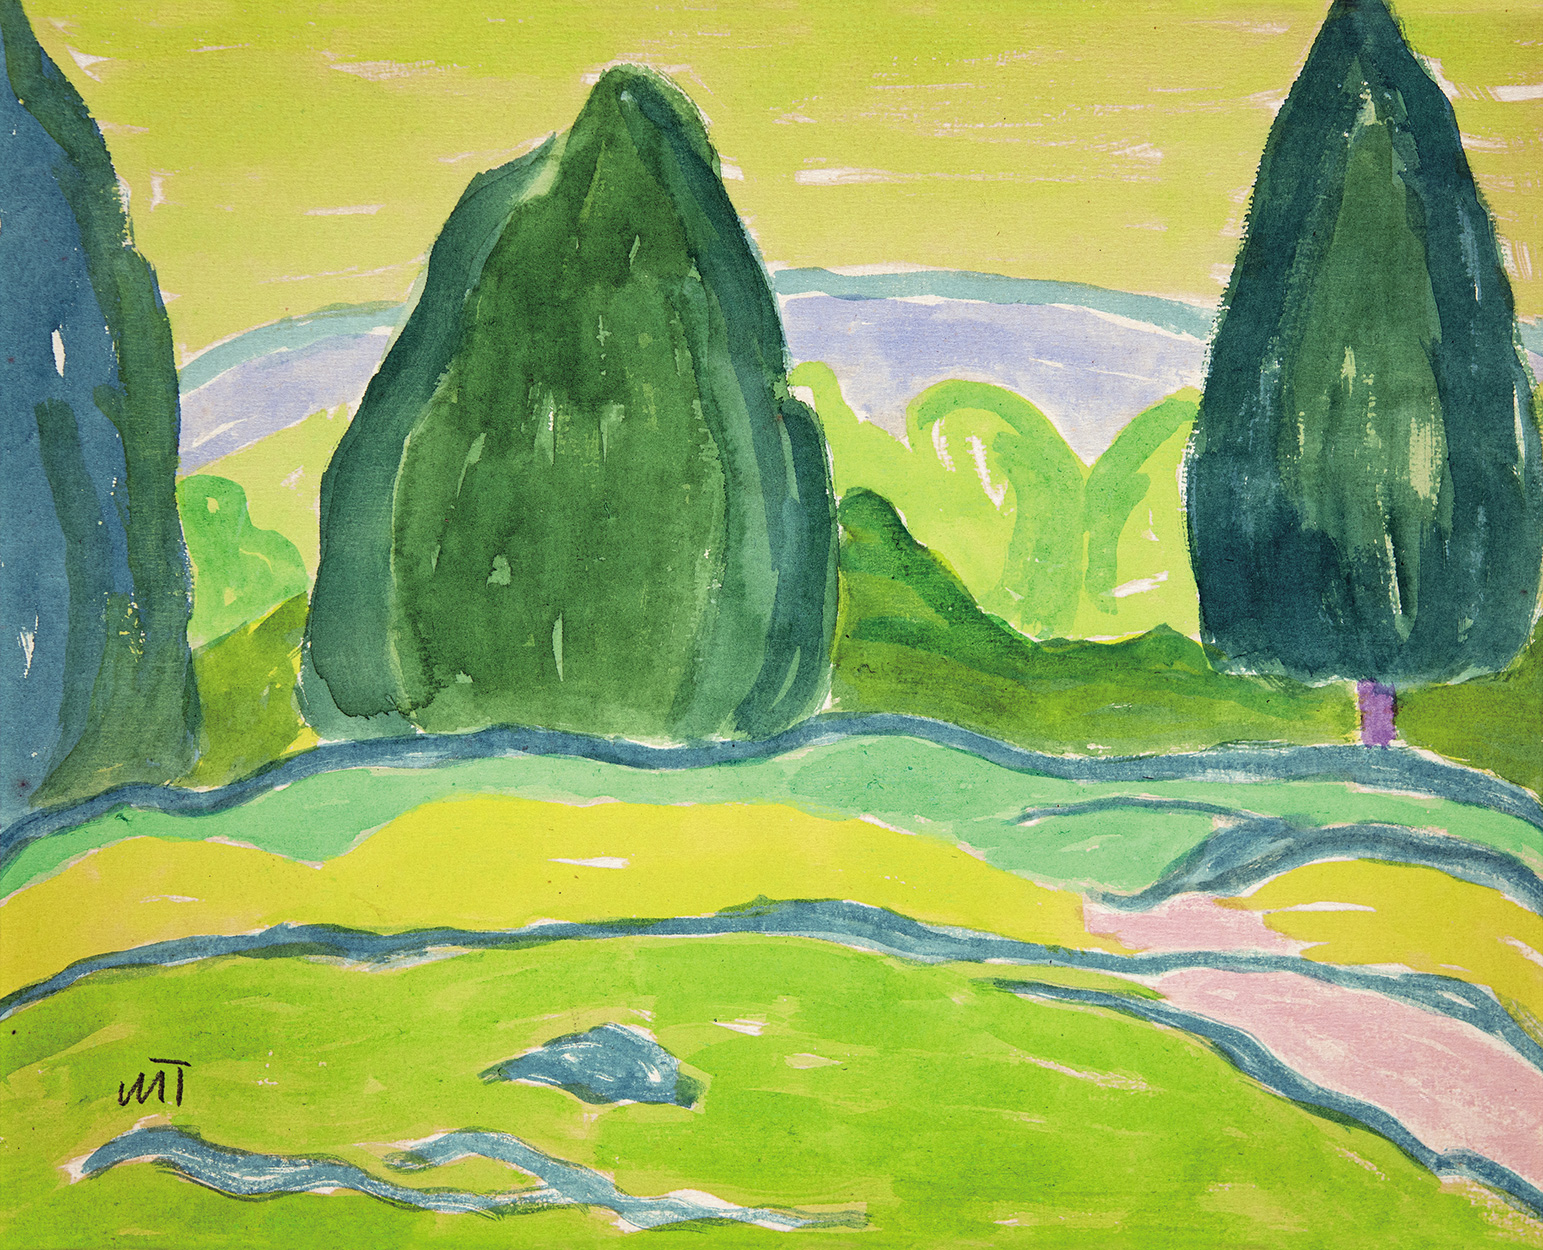 Mattis Teutsch János (1884-1960) Landscape with Trees, 1916